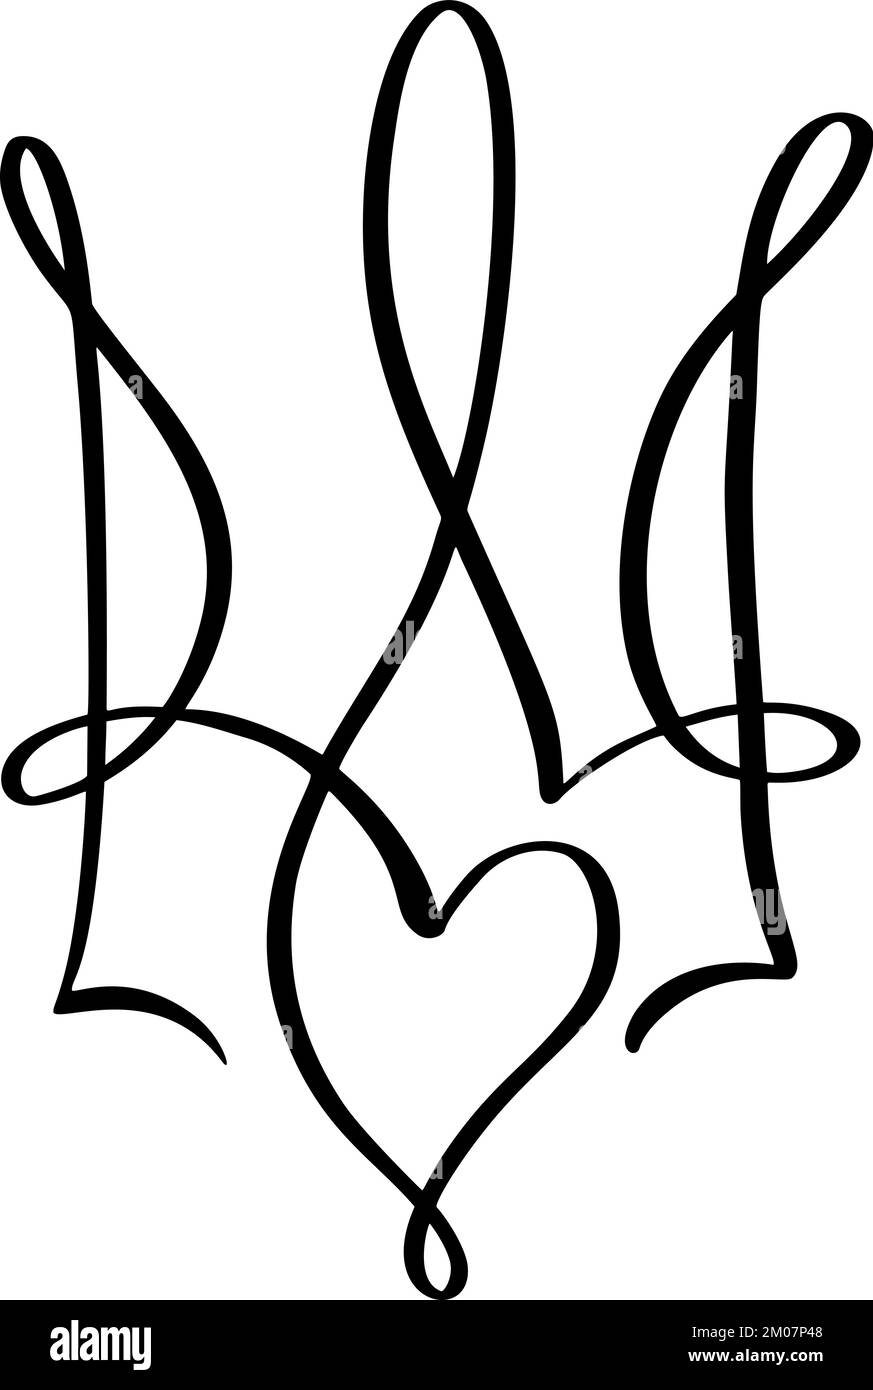 Nationales ukrainisches Symbol Dreizack-Ikone mit Herzliebe. Vektor Hand gezeichnete Kalligraphie Wappen der Ukraine Staatswappen schwarze Farbe Illustration Stock Vektor